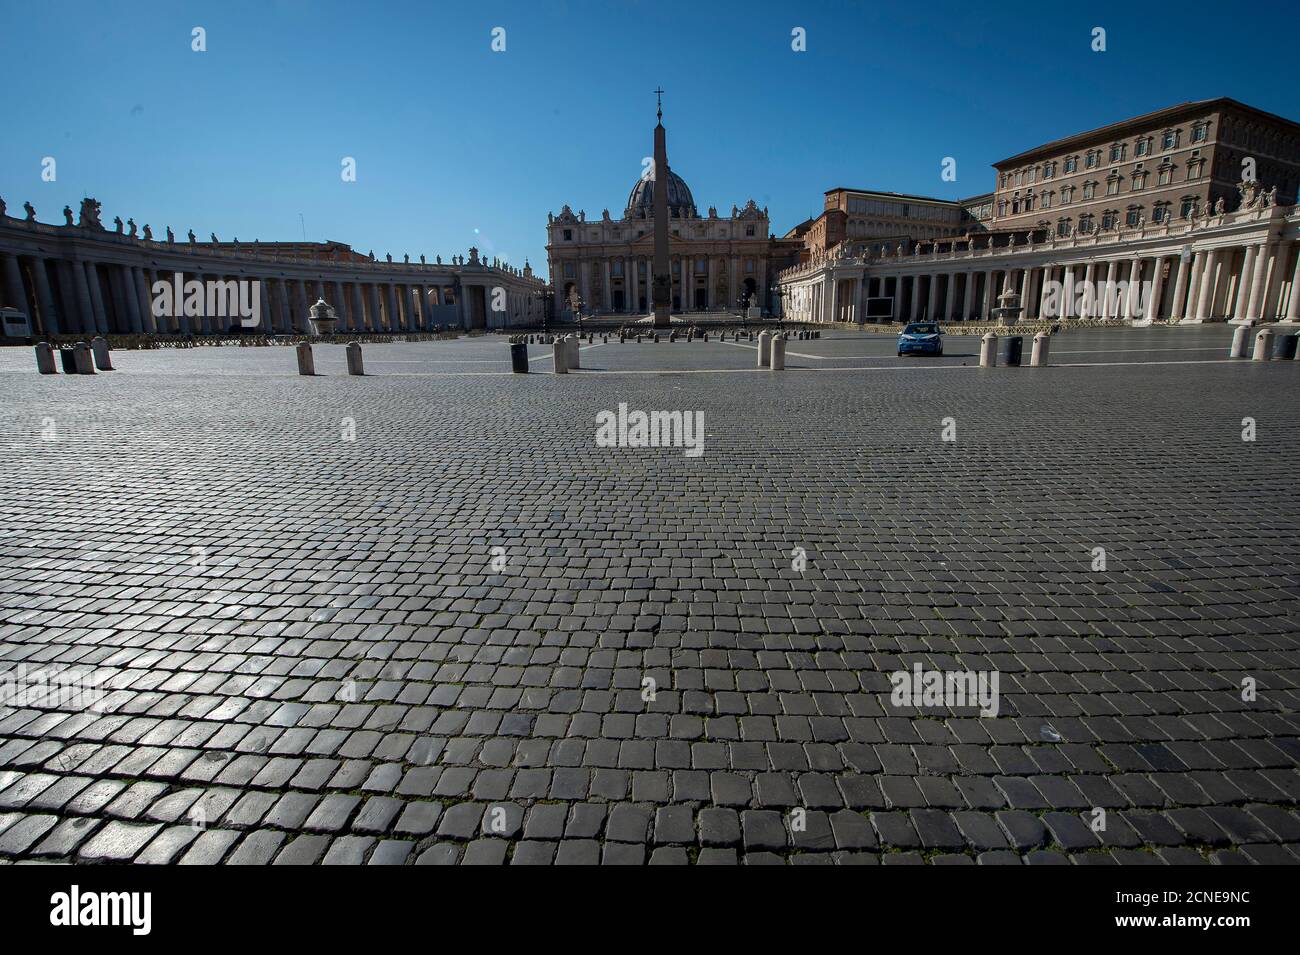 La place Saint-Pierre, un jour après elle a été fermée aux touristes à cause du coronavirus, Vatican, Rome, Lazio, Italie, Europe Banque D'Images